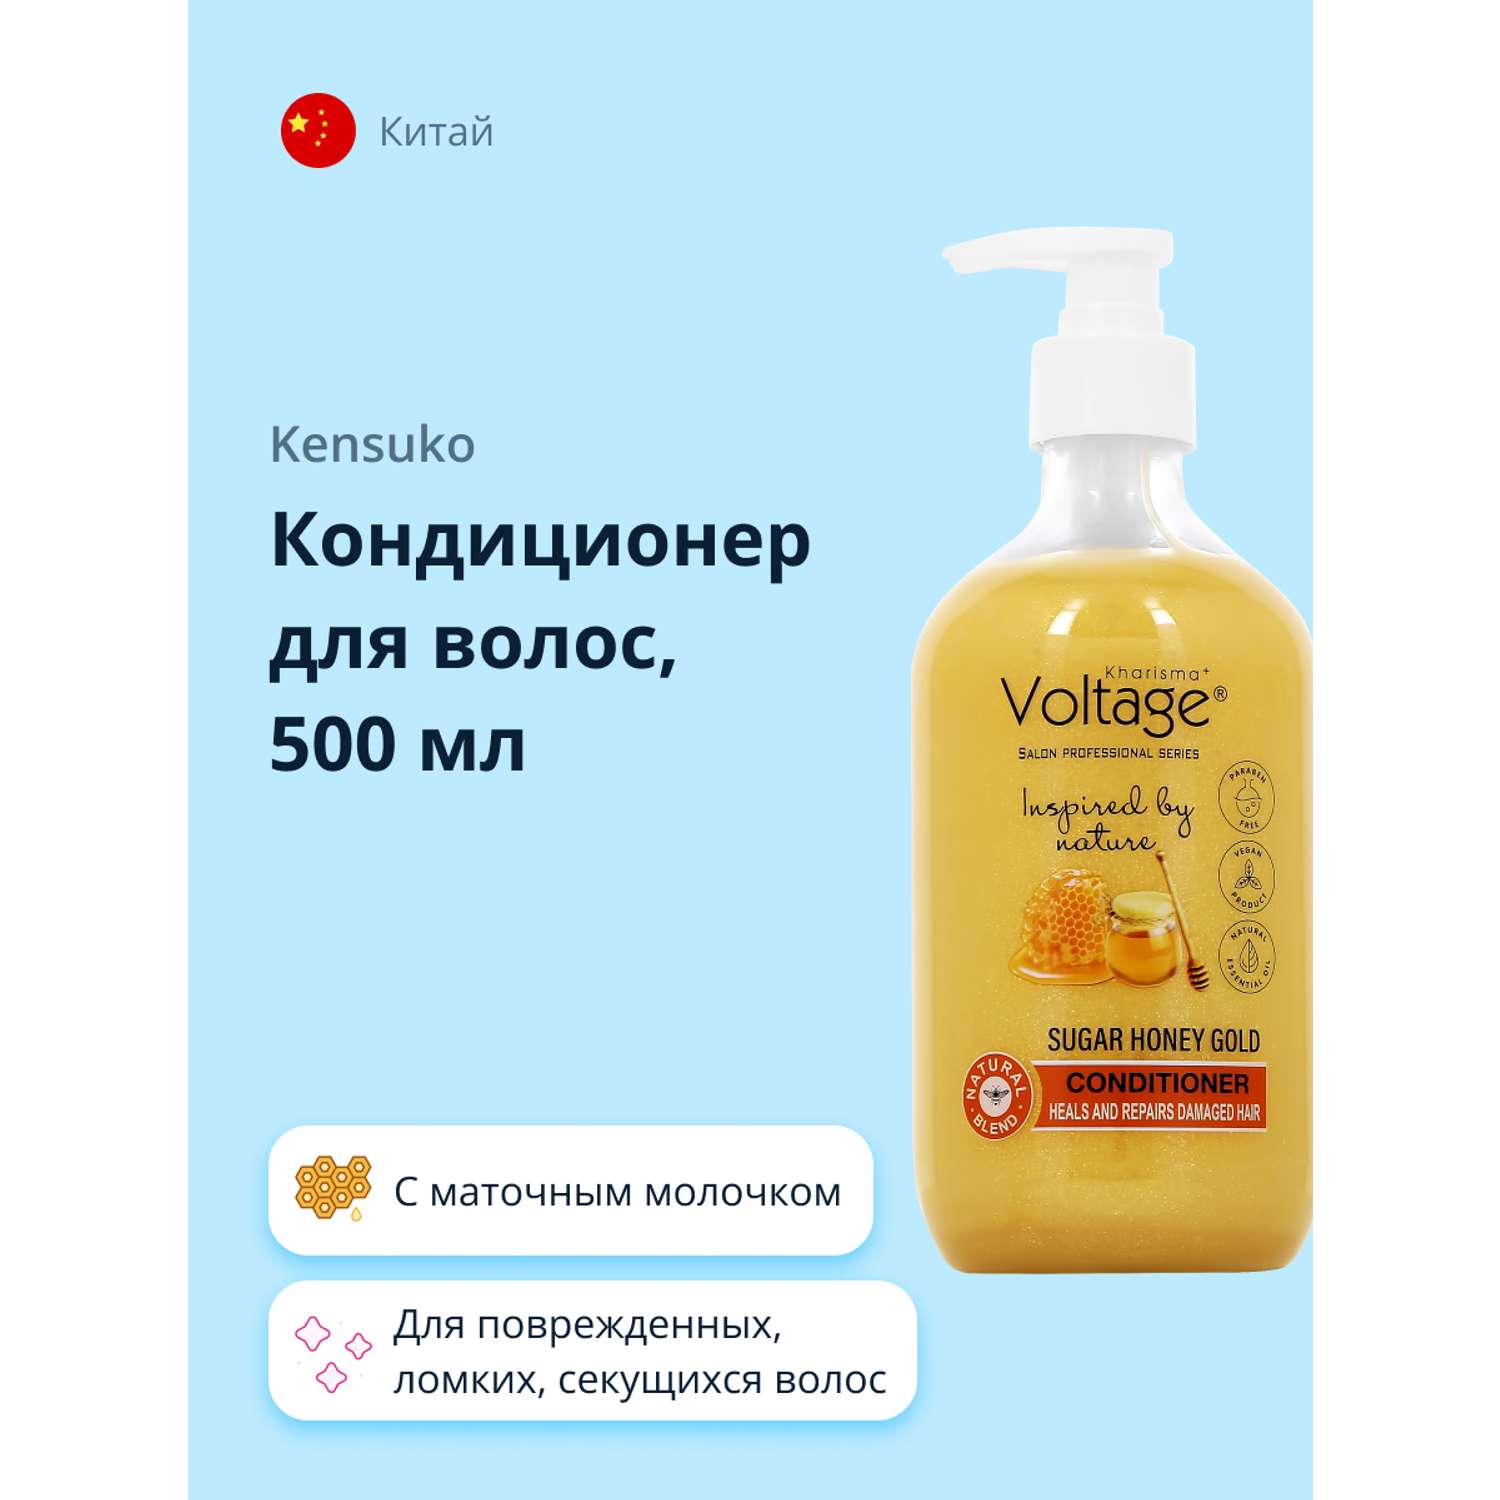 Кондиционер для волос Kharisma Voltage Sugar honey gold 500 мл - фото 1